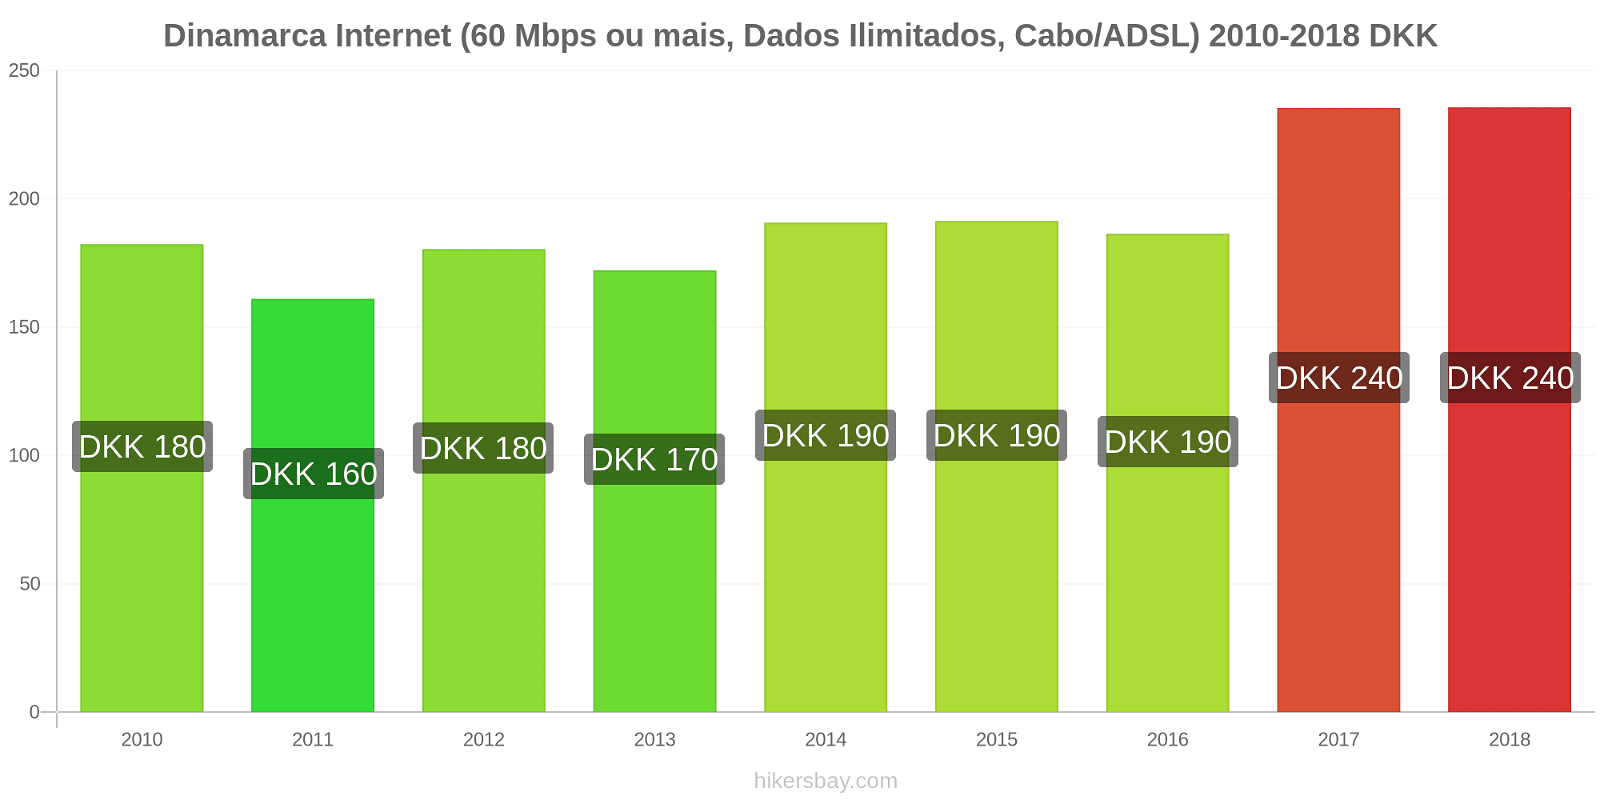 Dinamarca mudanças de preços Internet (60 Mbps ou mais, dados ilimitados, cabo/ADSL) hikersbay.com